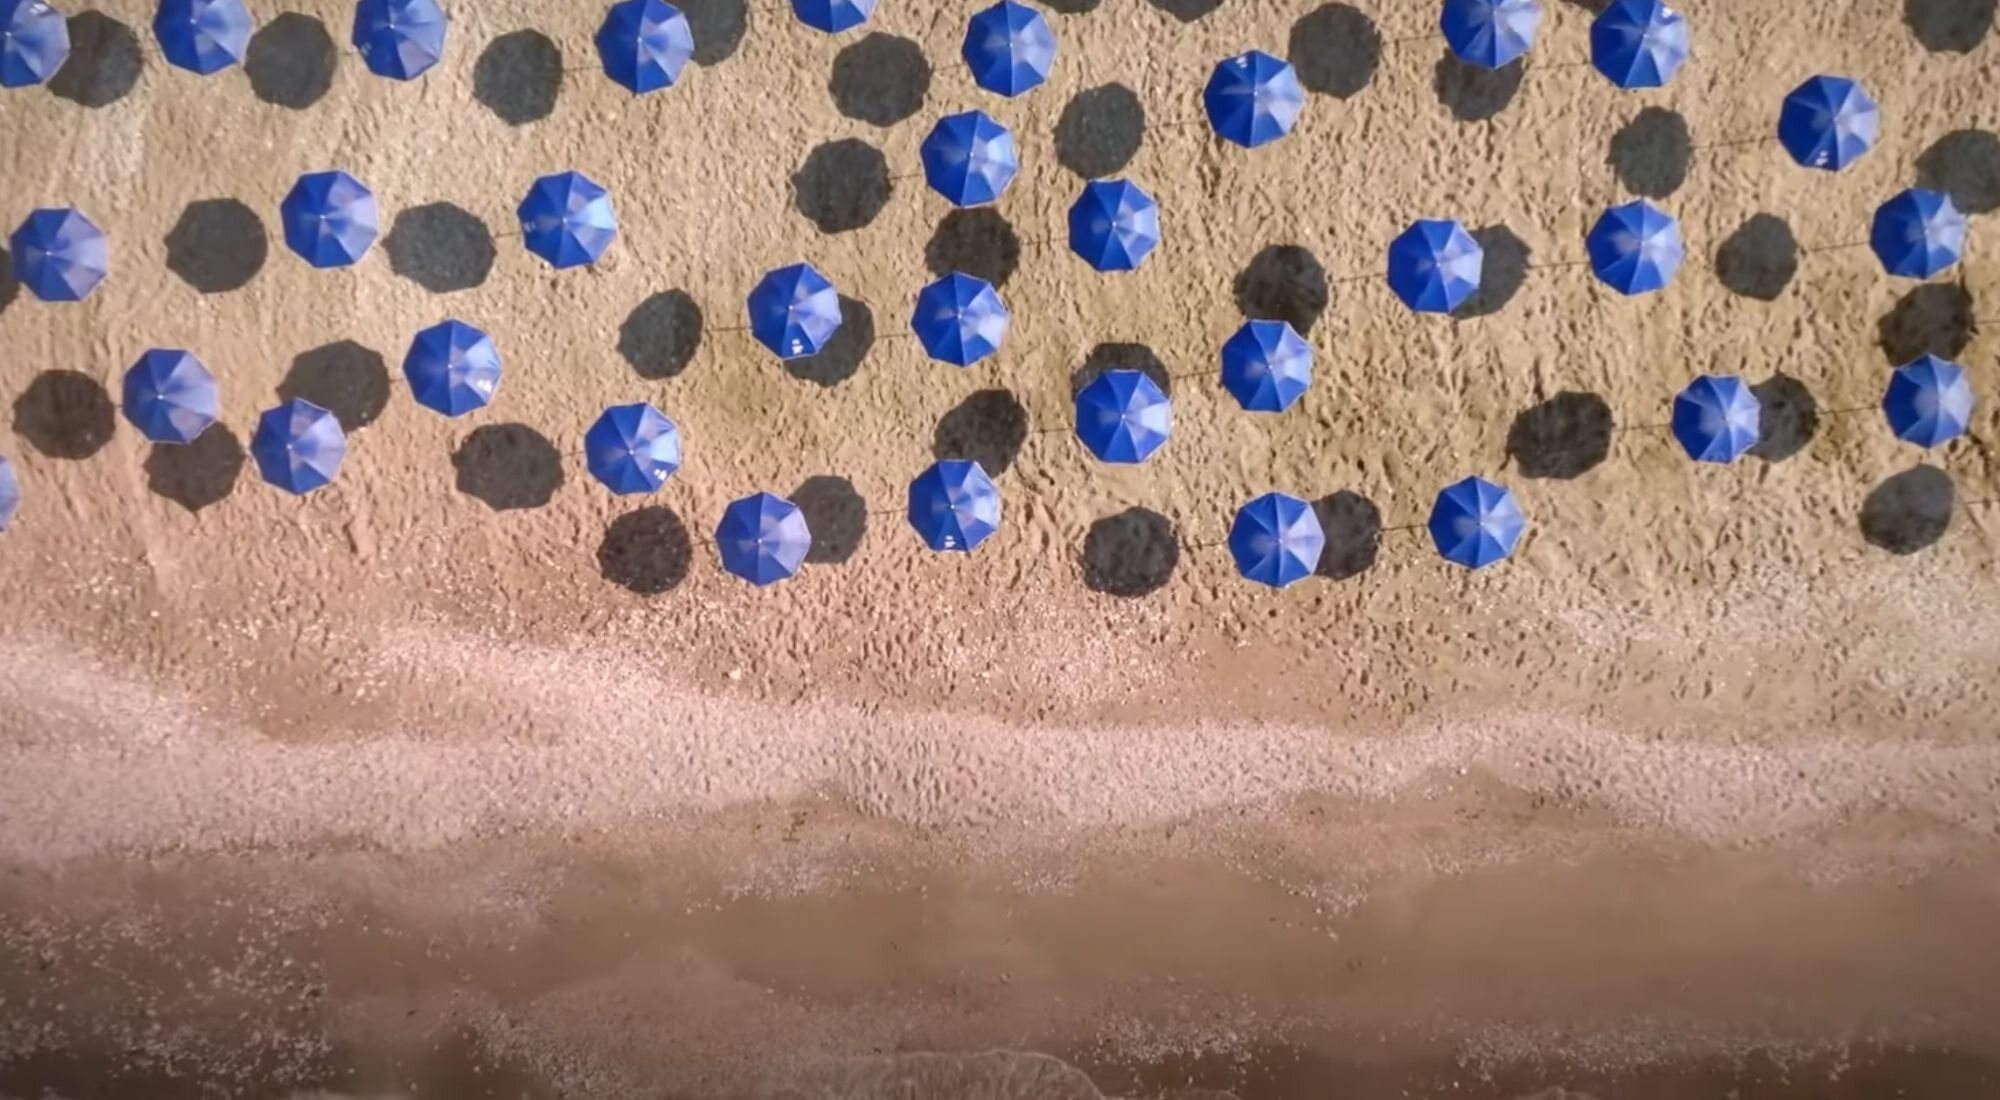 Sombrillas azules en un vídeo de la campaña "verano azul" del Partido Popular